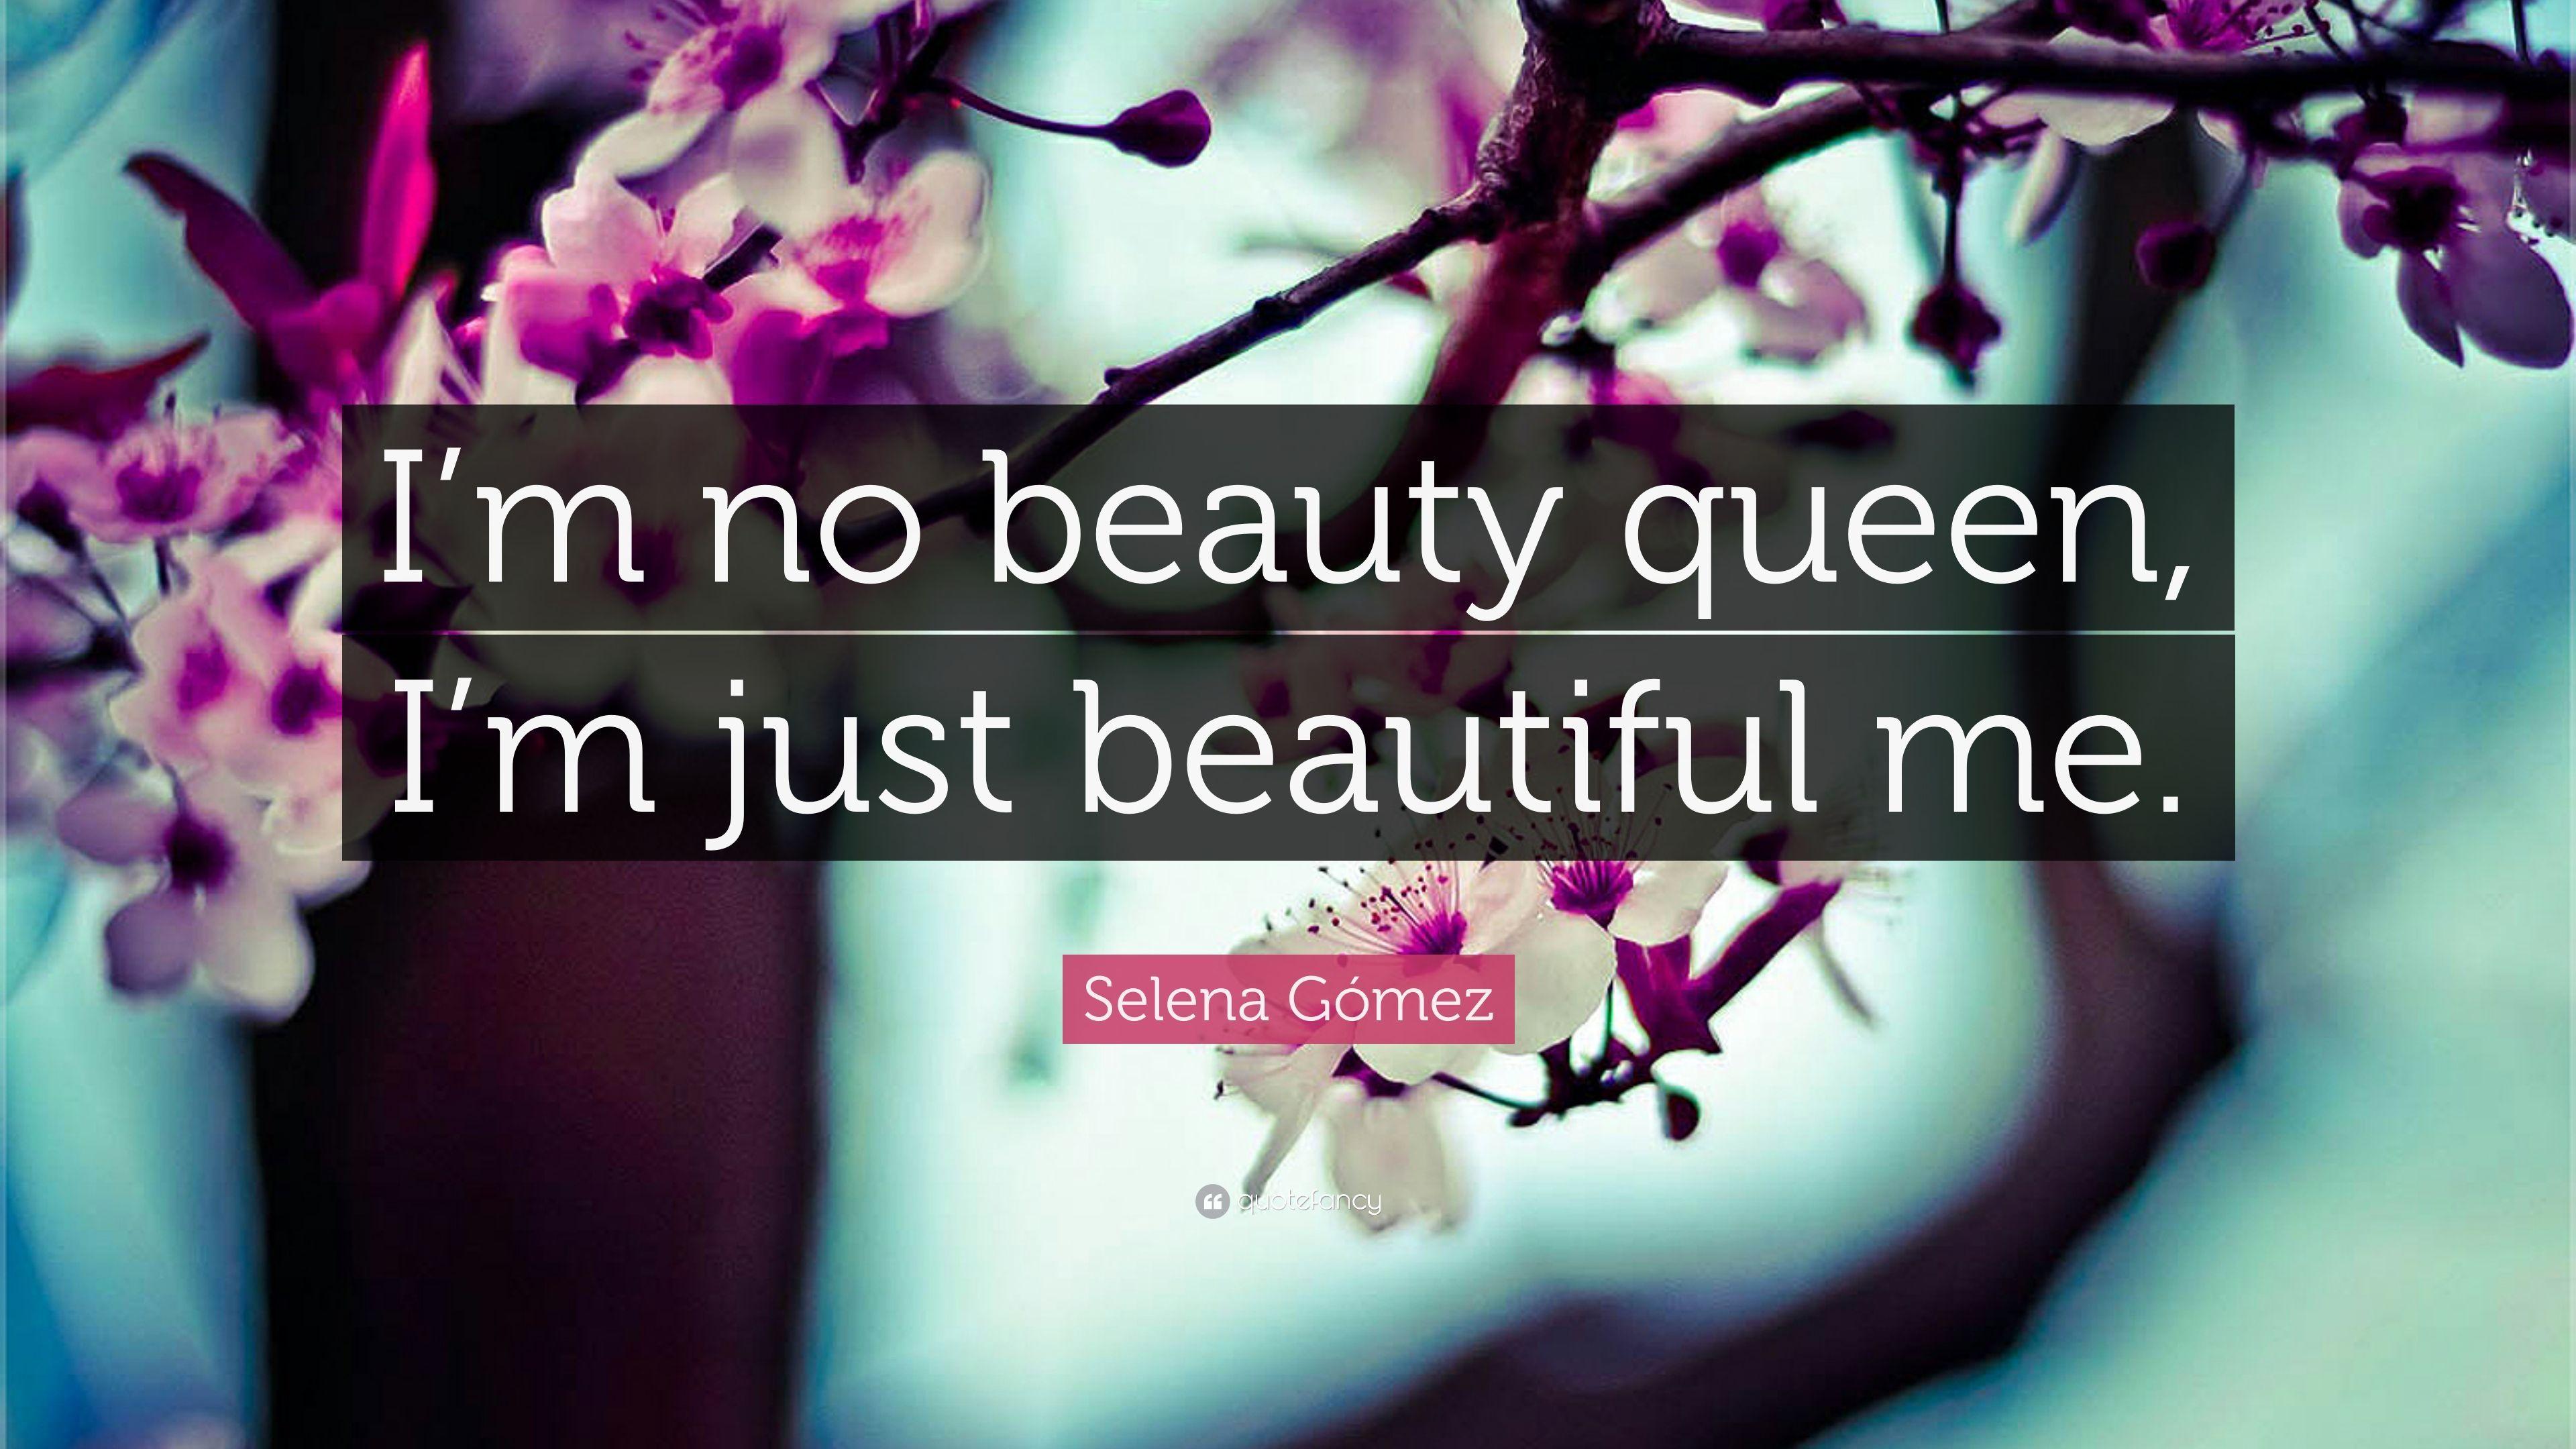 Selena Gómez Quote: “I'm no beauty queen, I'm just beautiful me